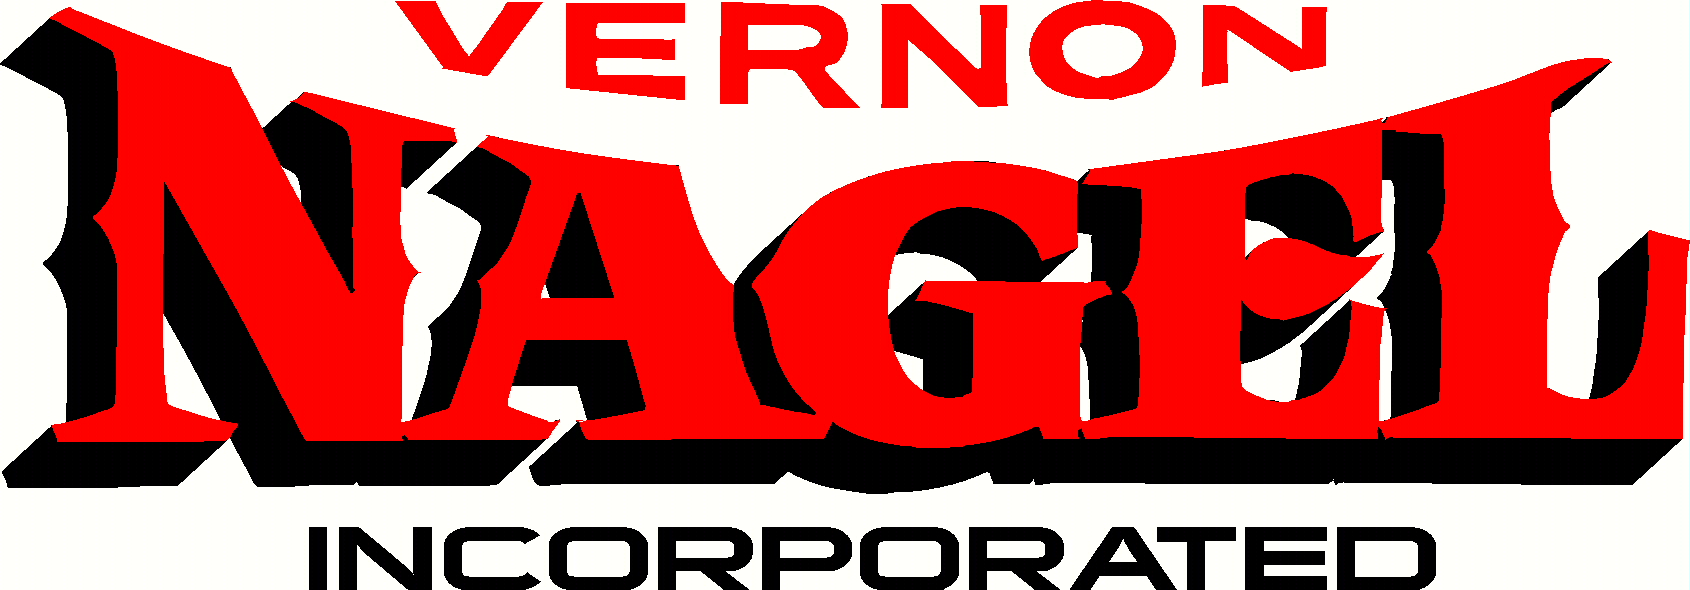 Vernon Nagel Logo.jpg